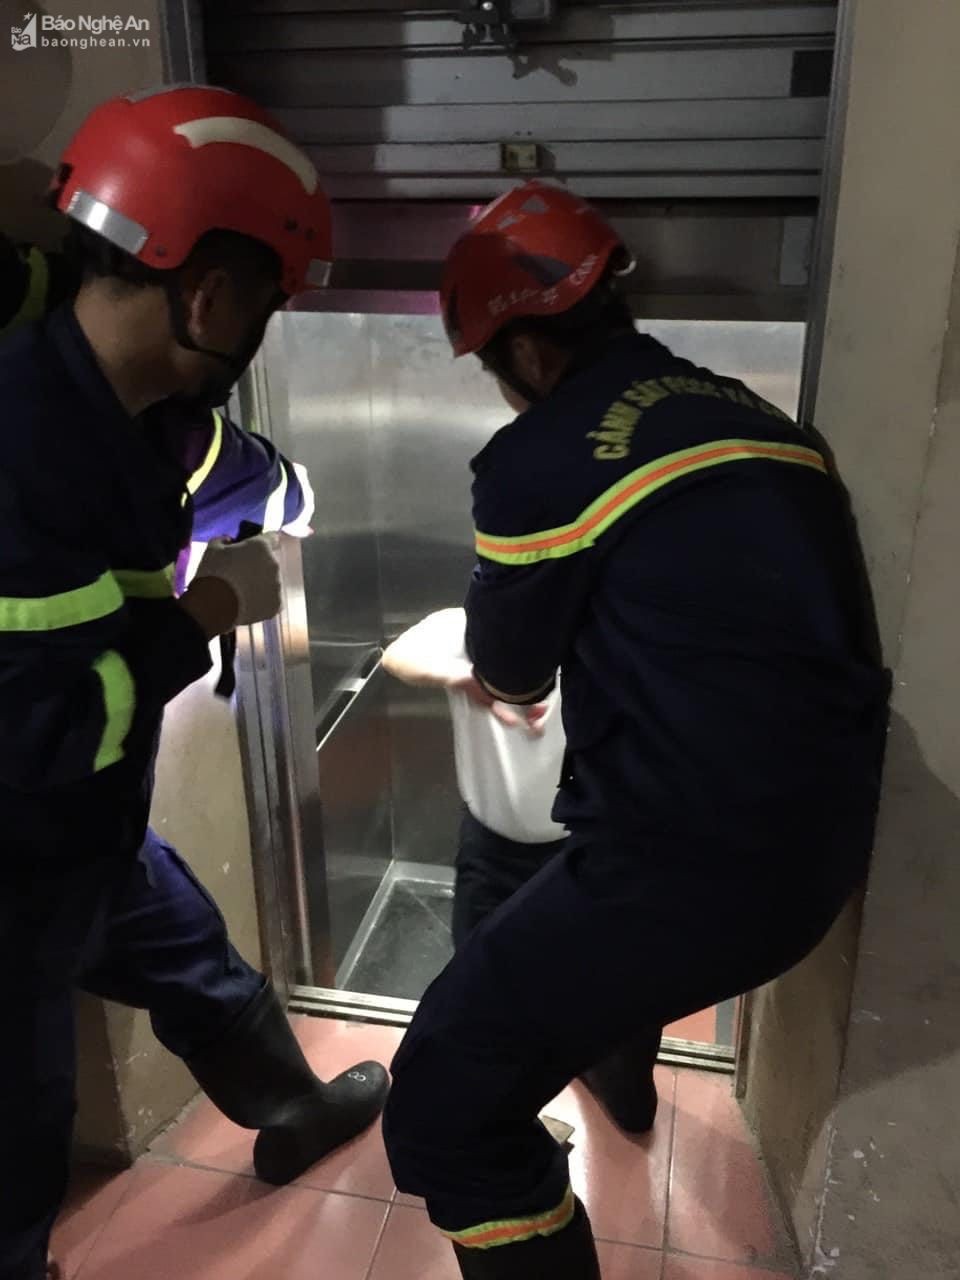 Lại tiếp tục ghi nhận thêm vụ việc 2 nạn nhân kẹt thang máy - Ảnh 2